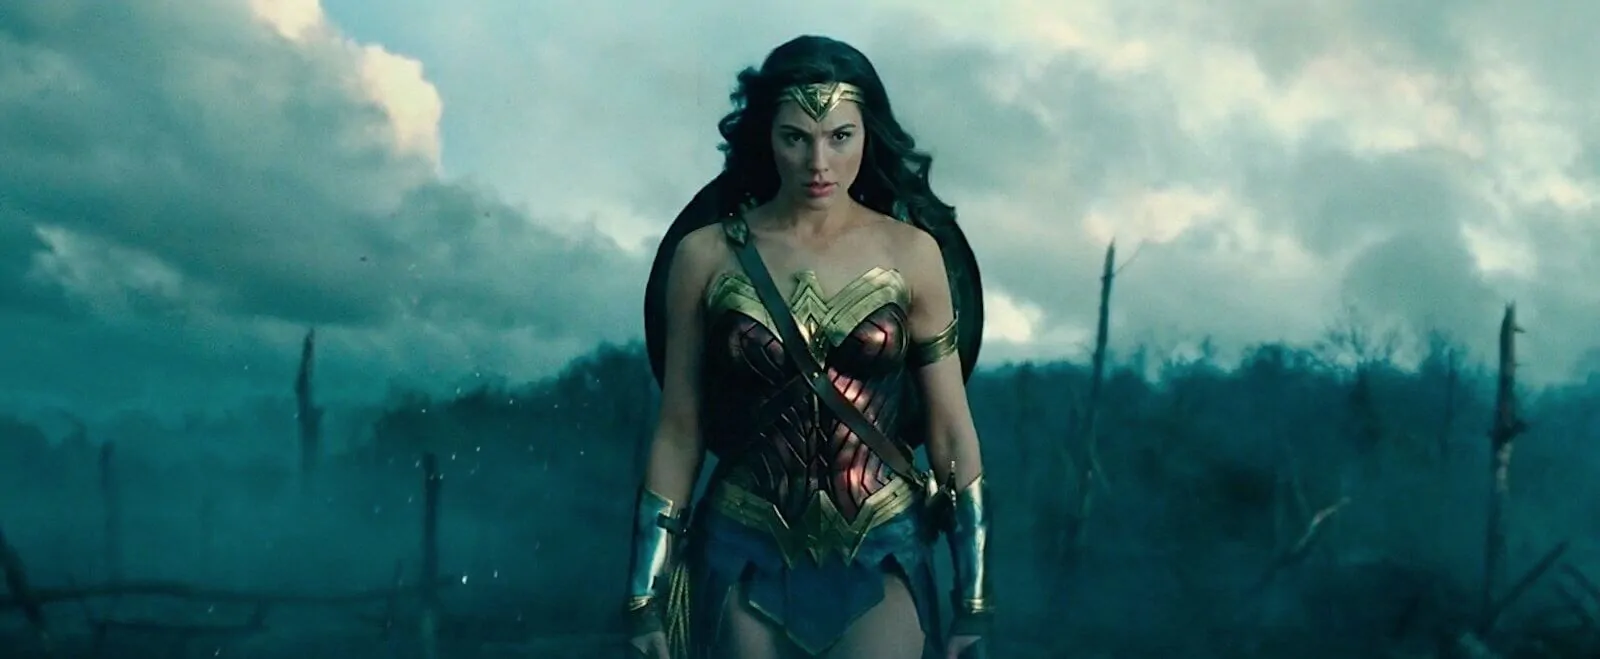 Wonder Woman — Medium long shot example